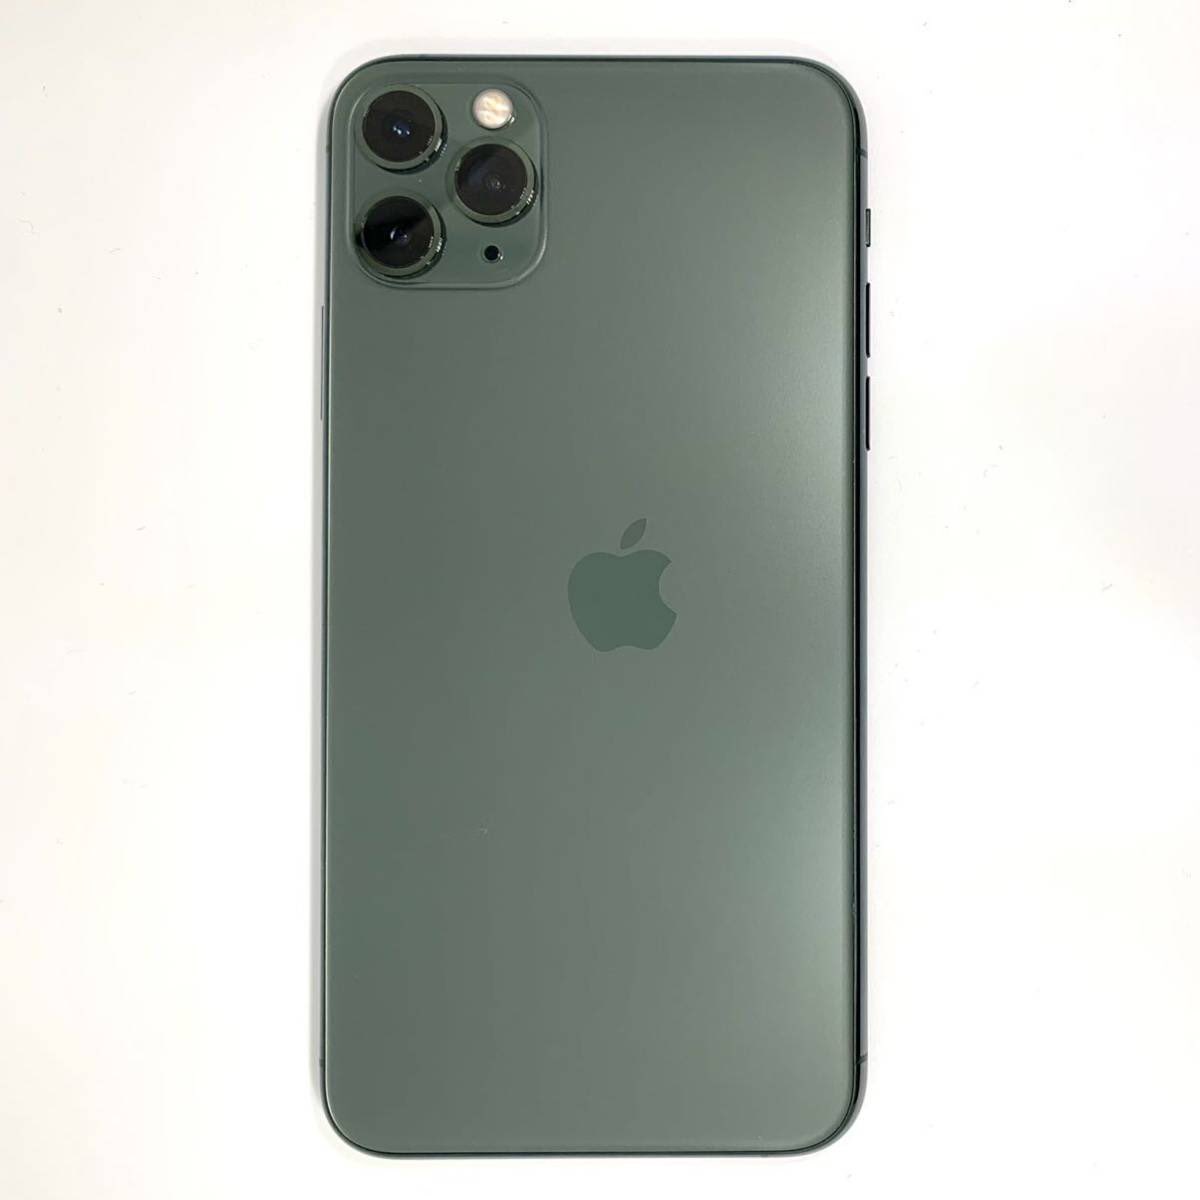 iPhone 11 Pro con logo Apple sbagliato è una chicca per collezionisti